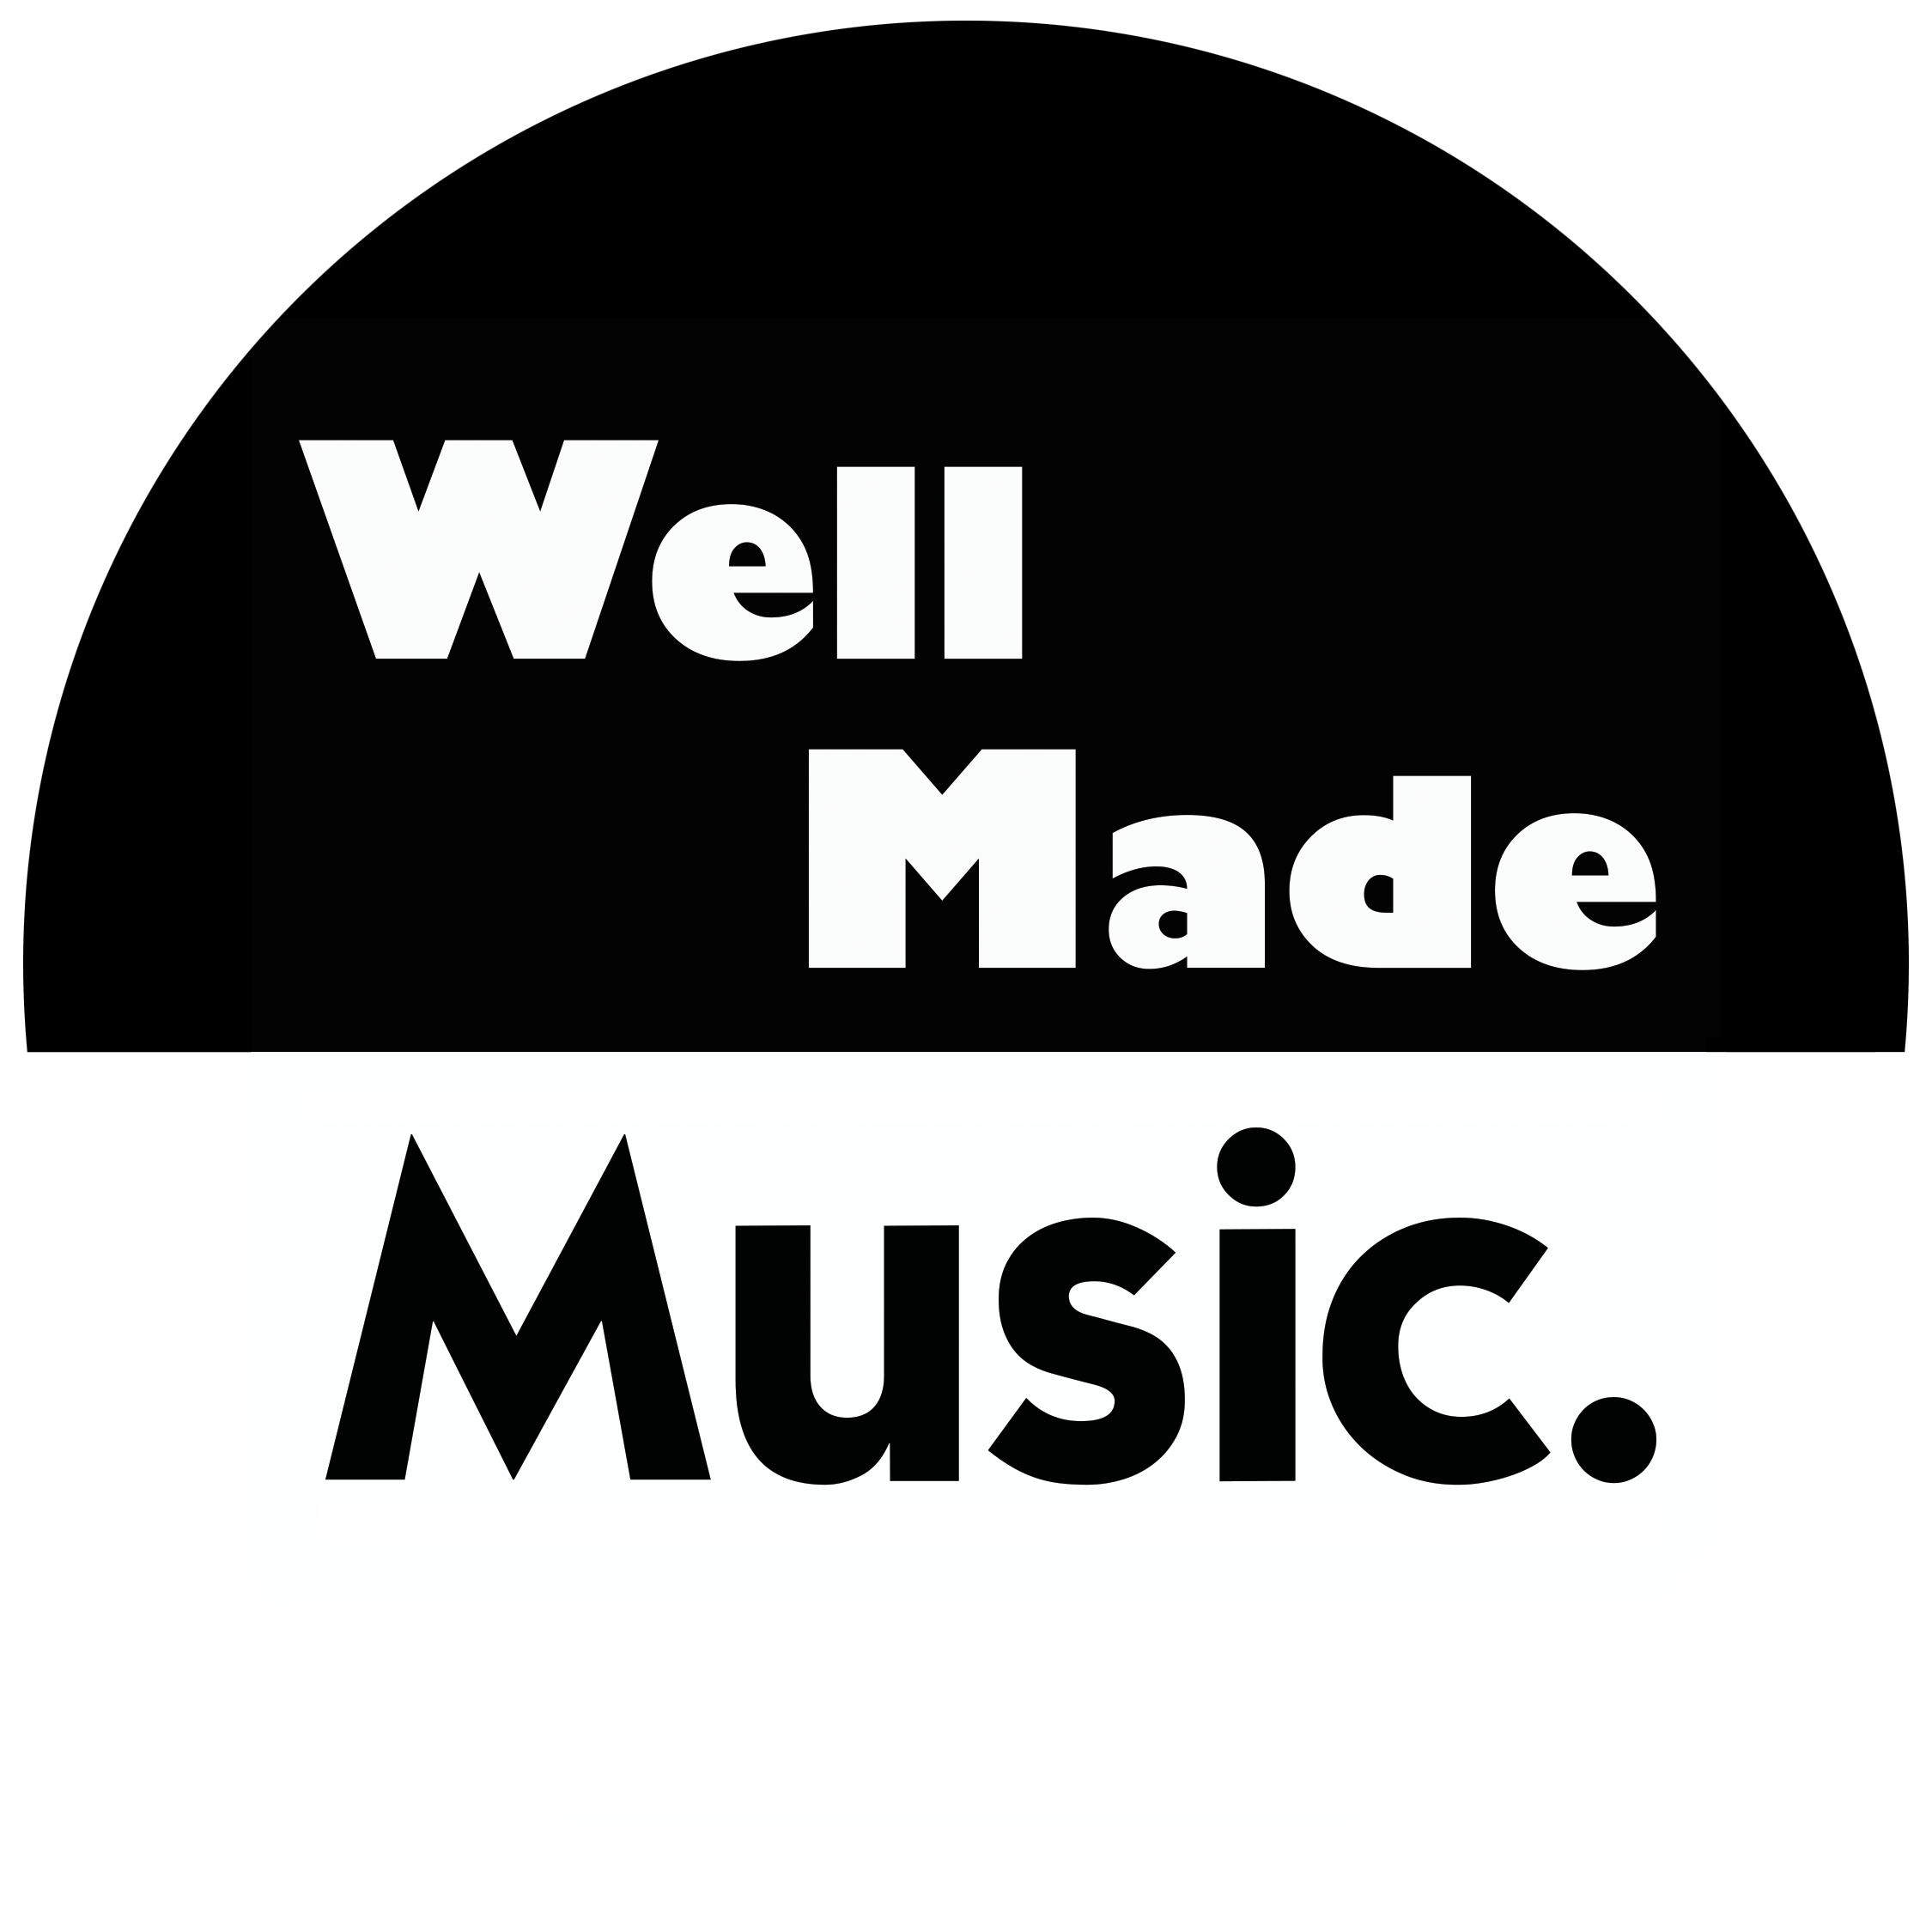 (c) Wellmademusic.net